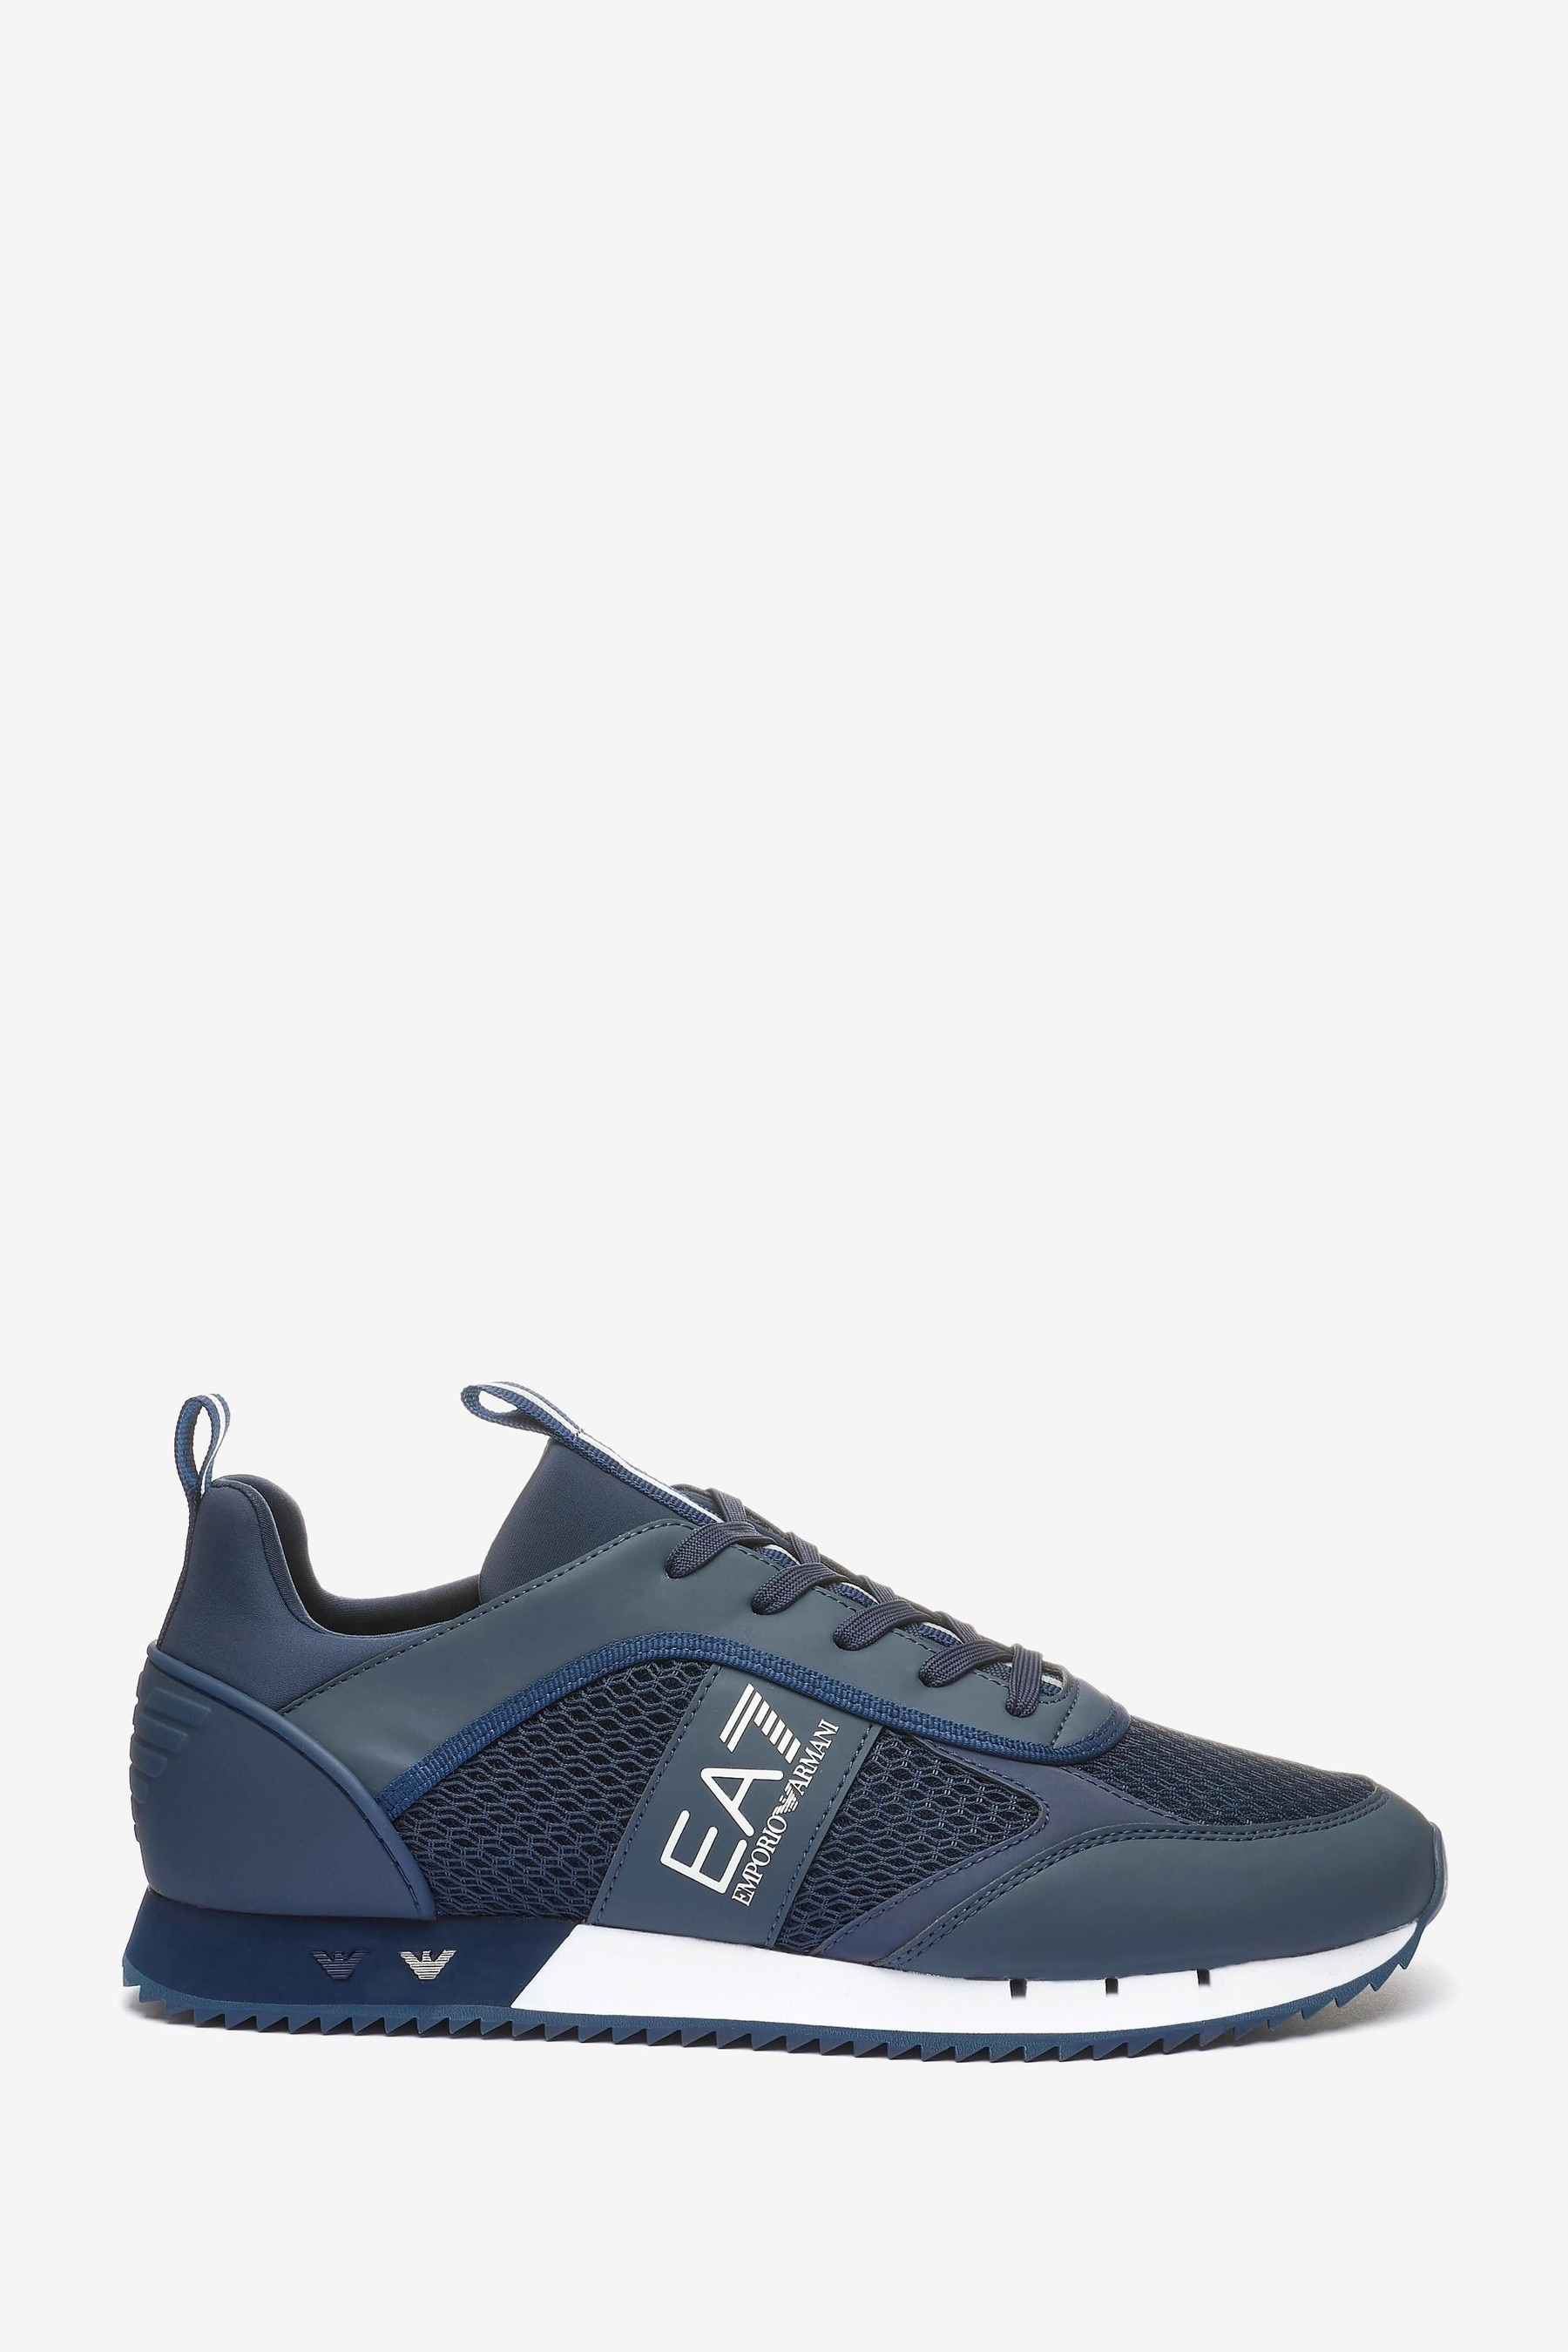 Спортивная обувь на шнуровке Emporio Armani Evolution EA7, синий